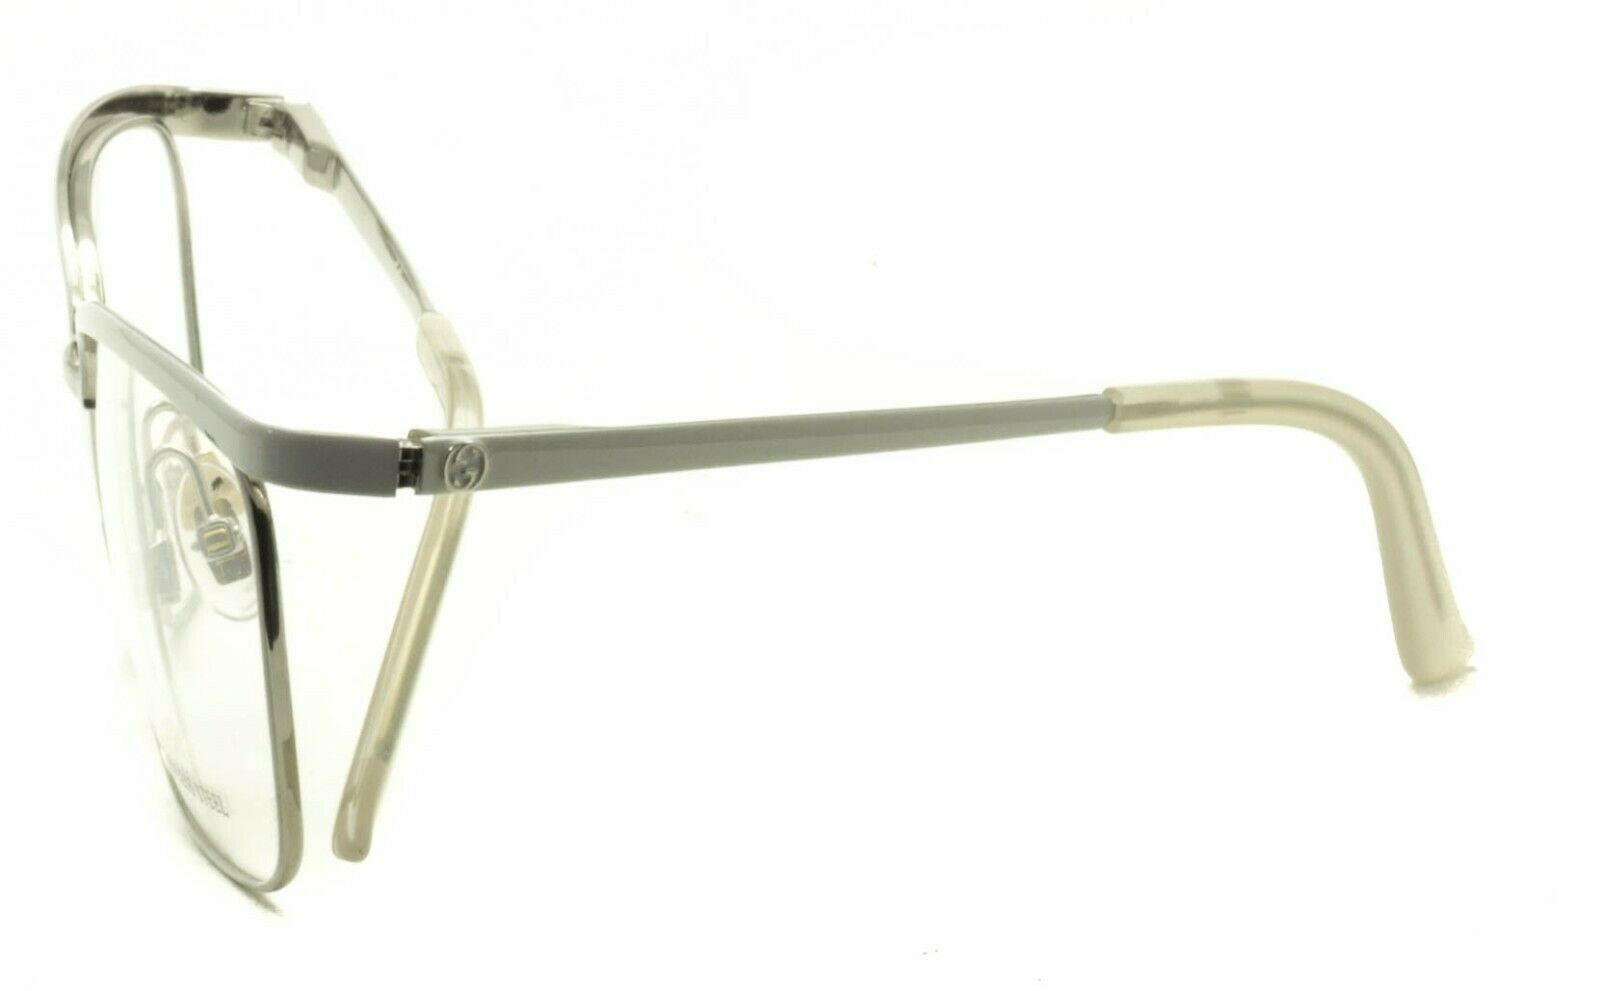 GUCCI GG 2885 RW0 Eyewear FRAMES Glasses RX Optical Eyeglasses New BNIB - Italy